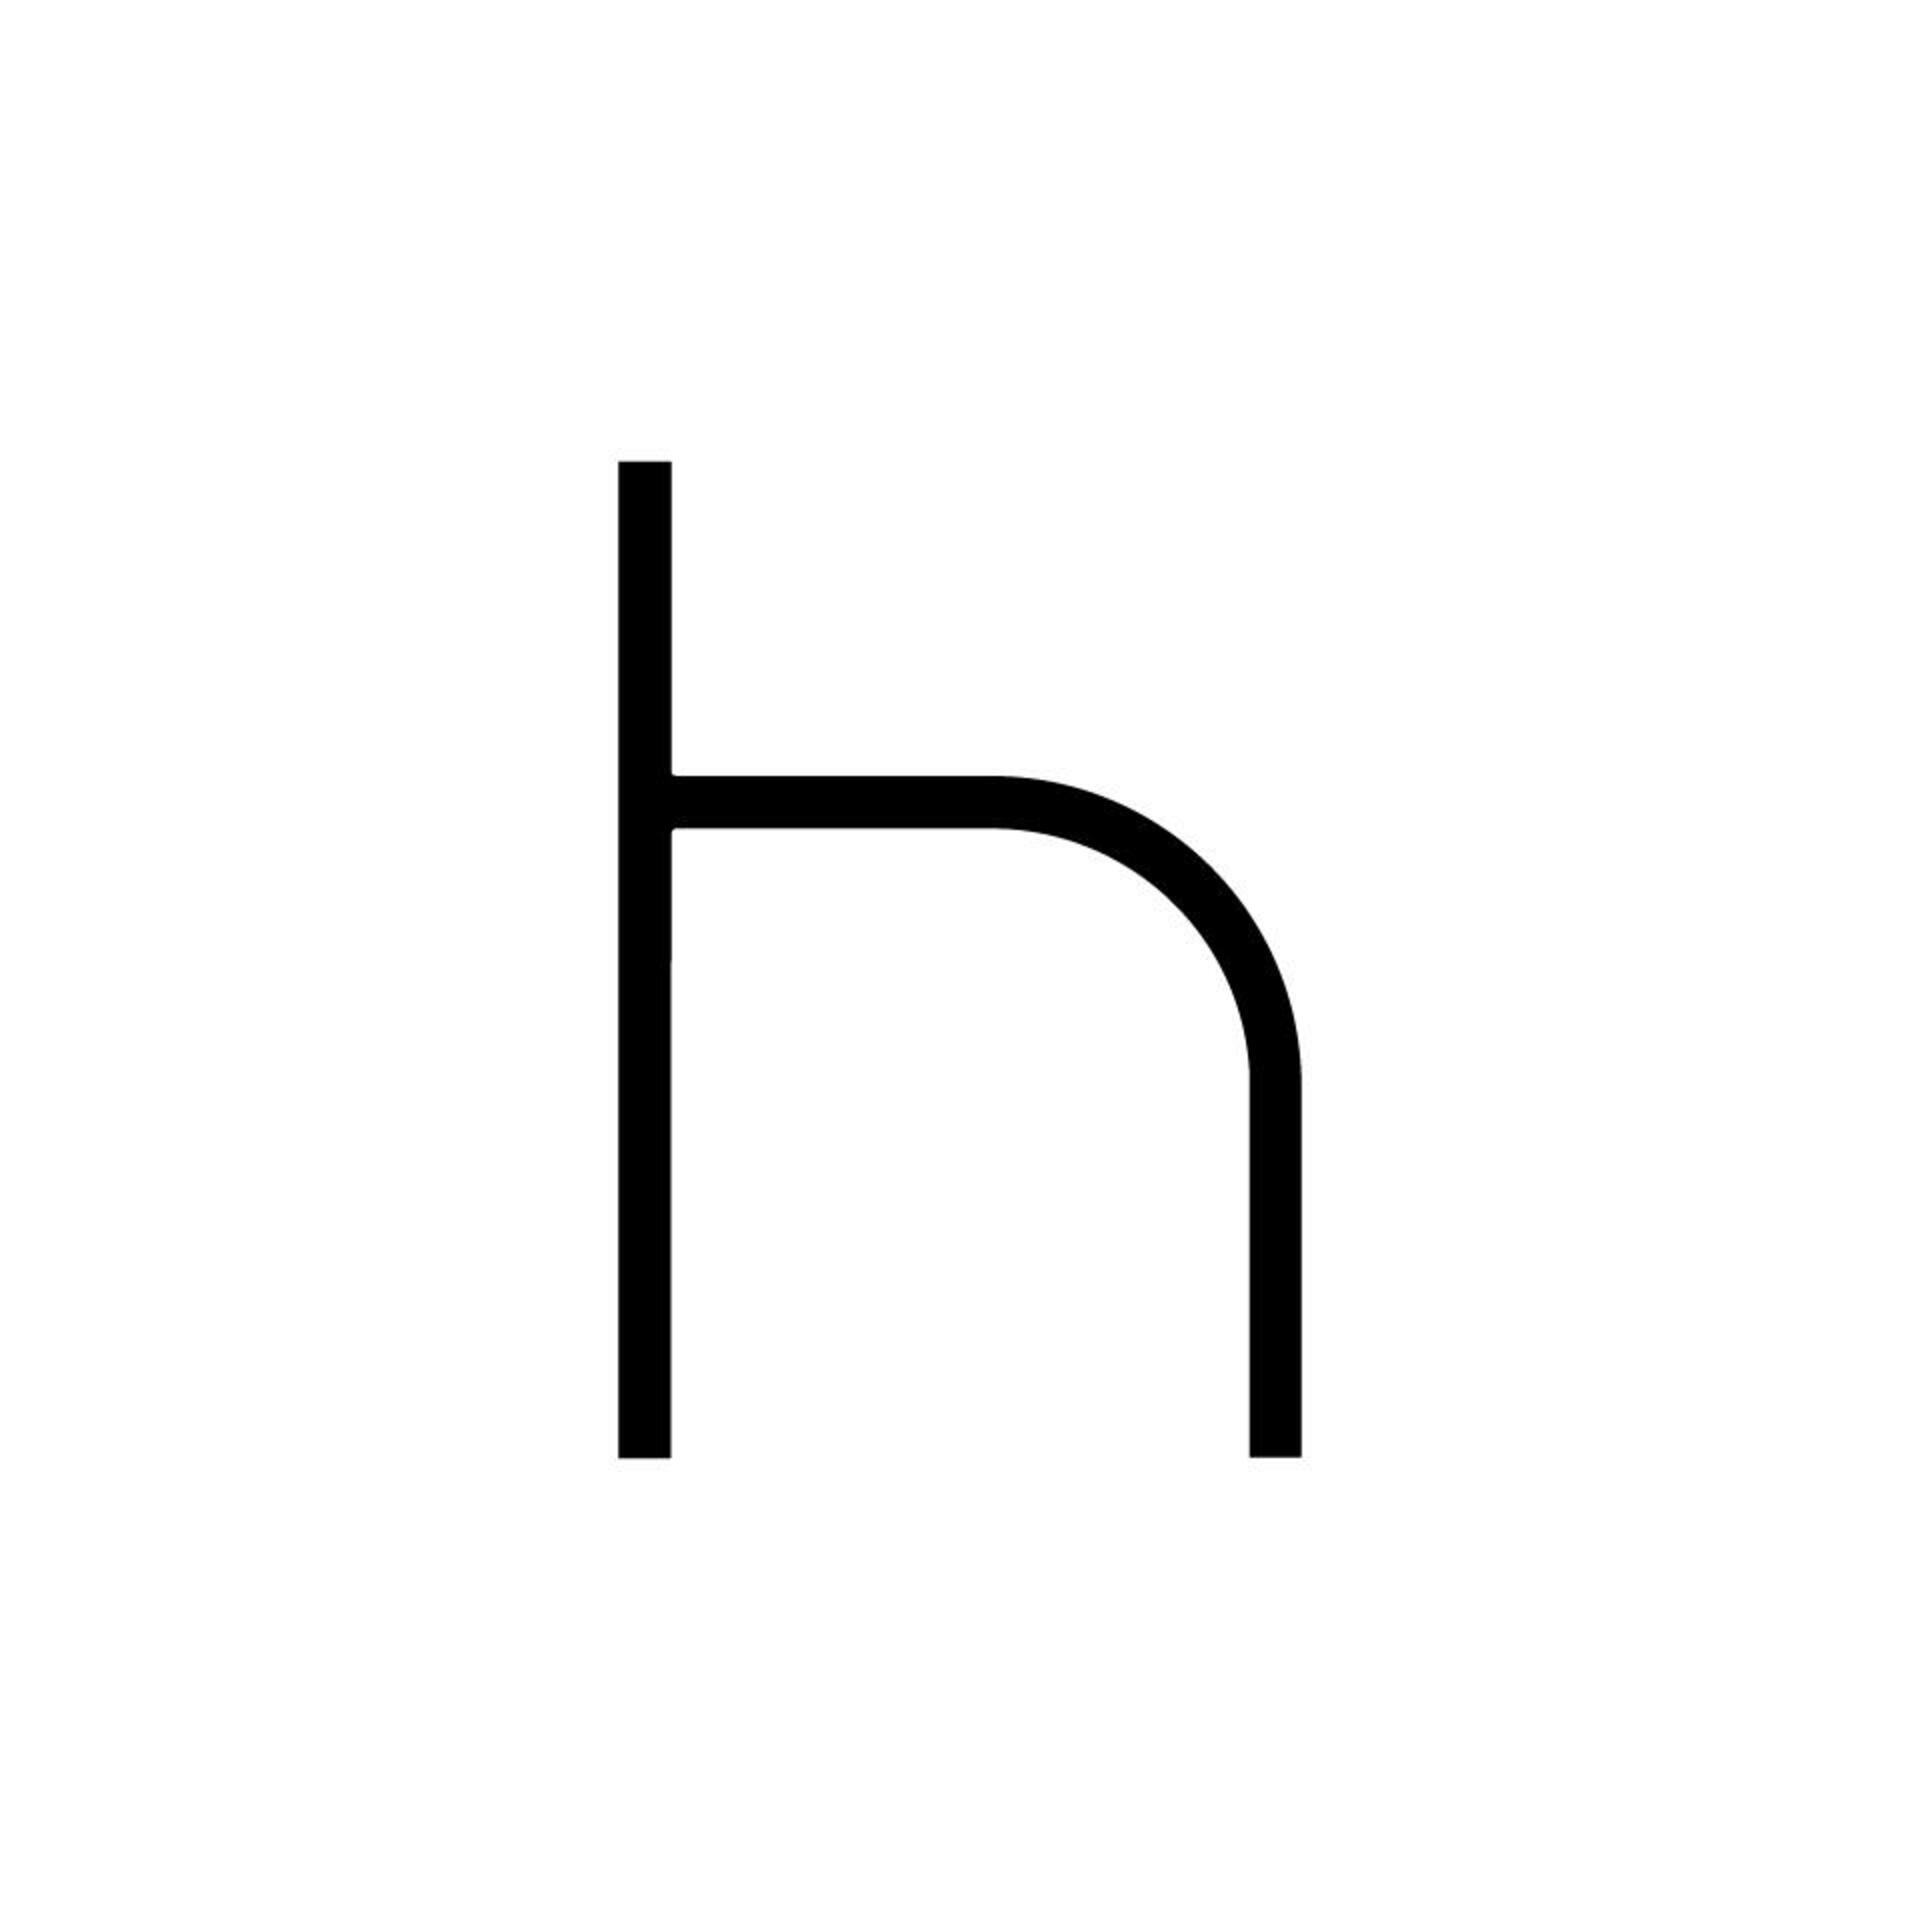 Artemide Alphabet of Light - malé písmeno h 1202h00A